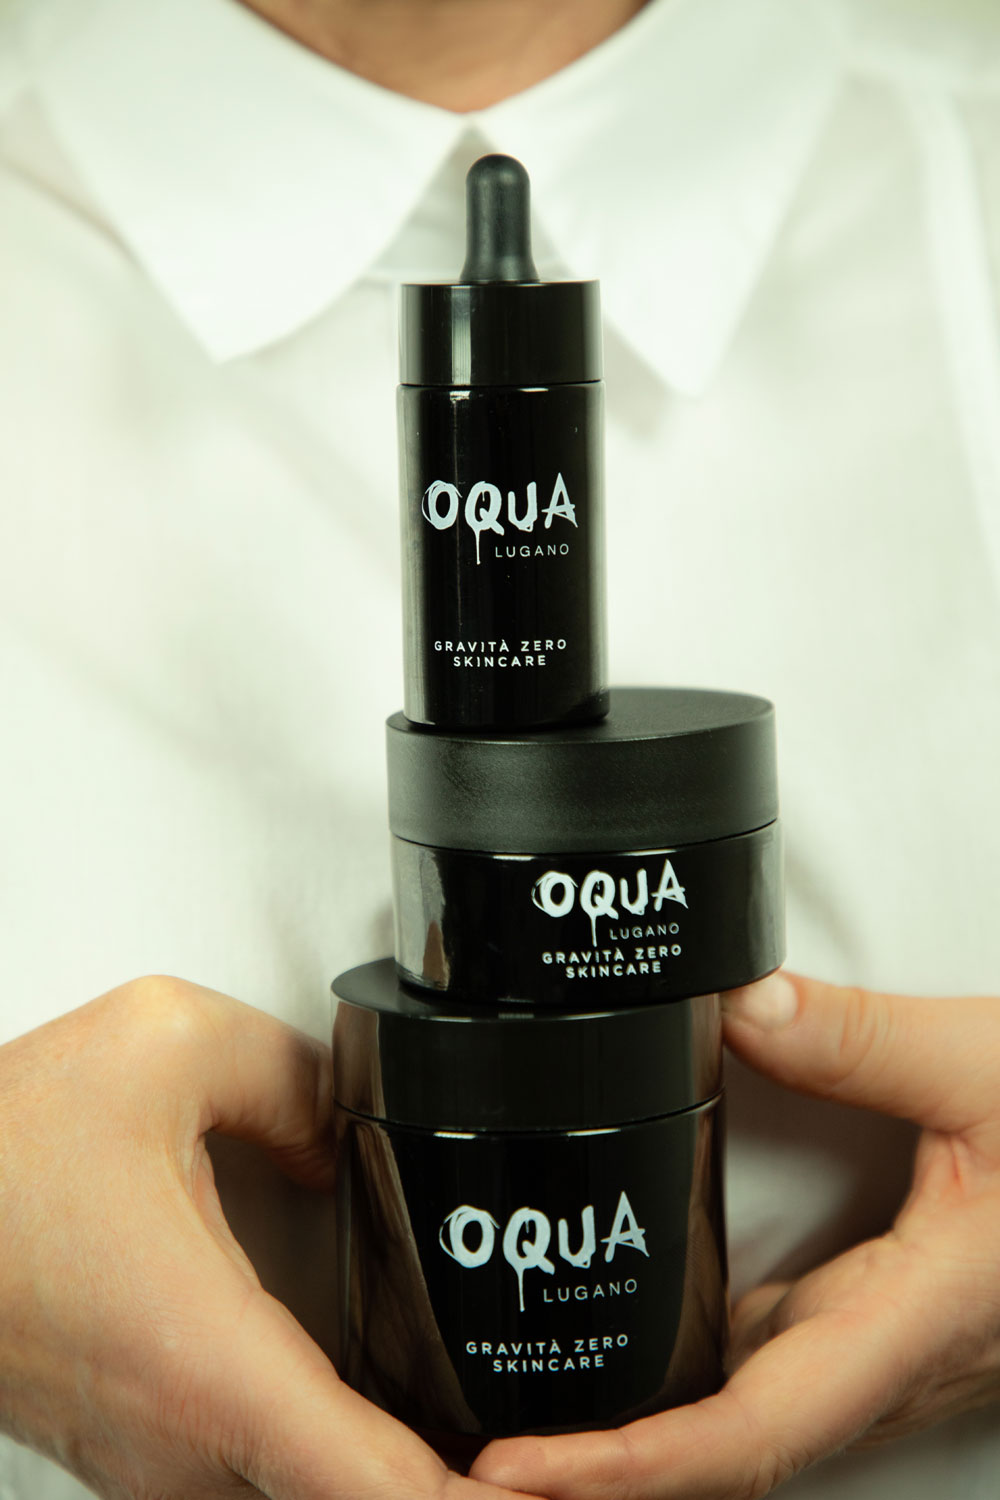 Makeup-Artist und Beauty-Unternehmerin Franziska Lerch redet auf sonrisa über die Gründung ihres Swiss Made Hautpflegebrands Oqua, wirtschaftliches Know-How und warum die Welt eine Lächel-Maschine braucht. 